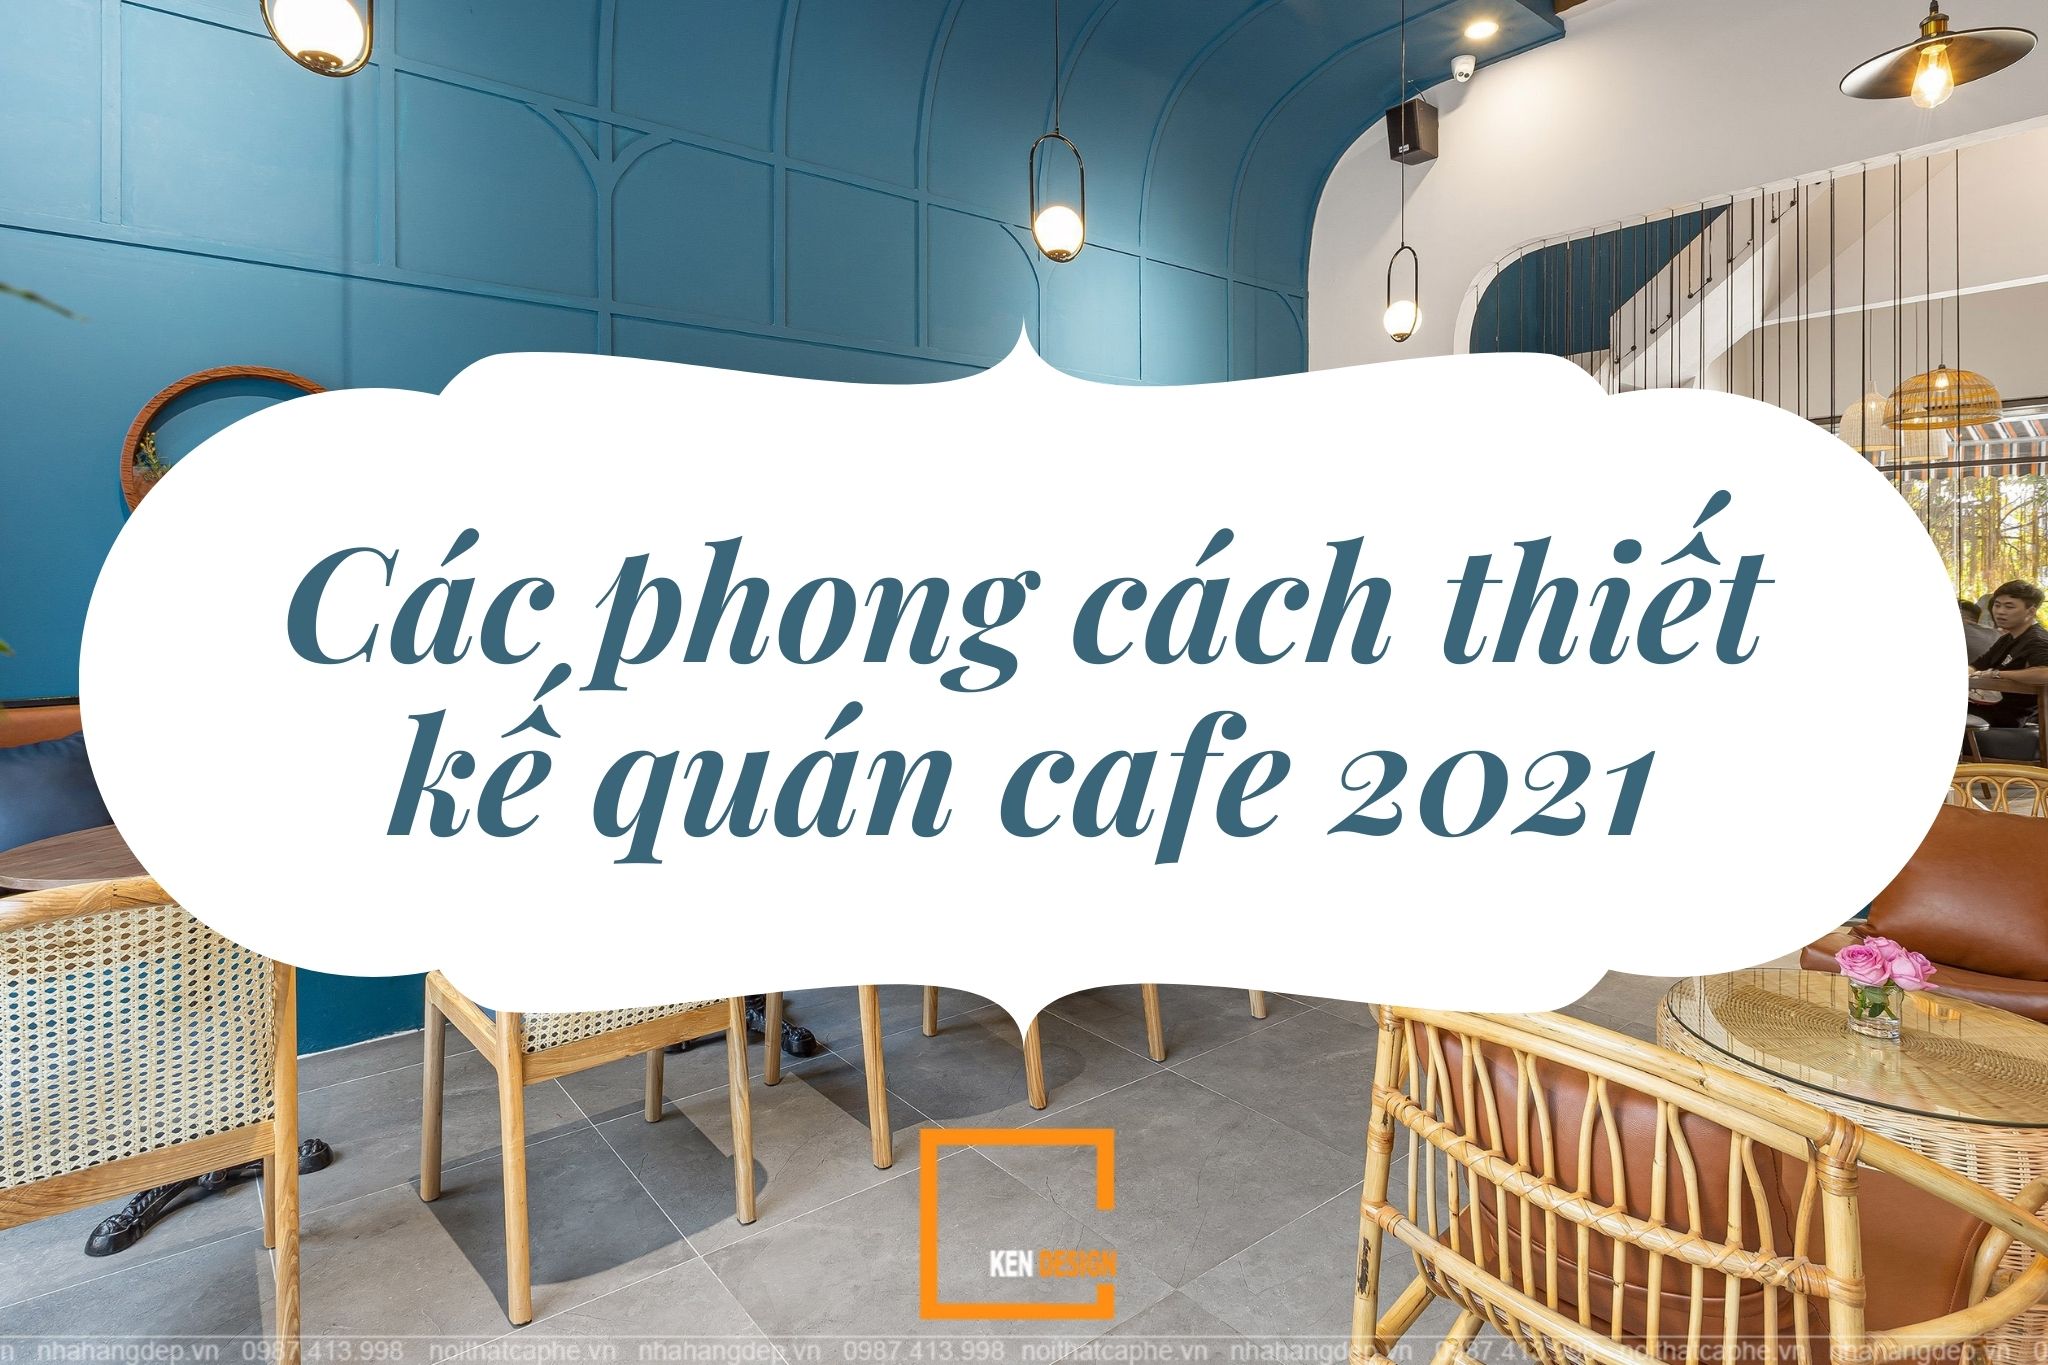 Các phong cách thiết kế quán cafe nổi bật trong năm 2021